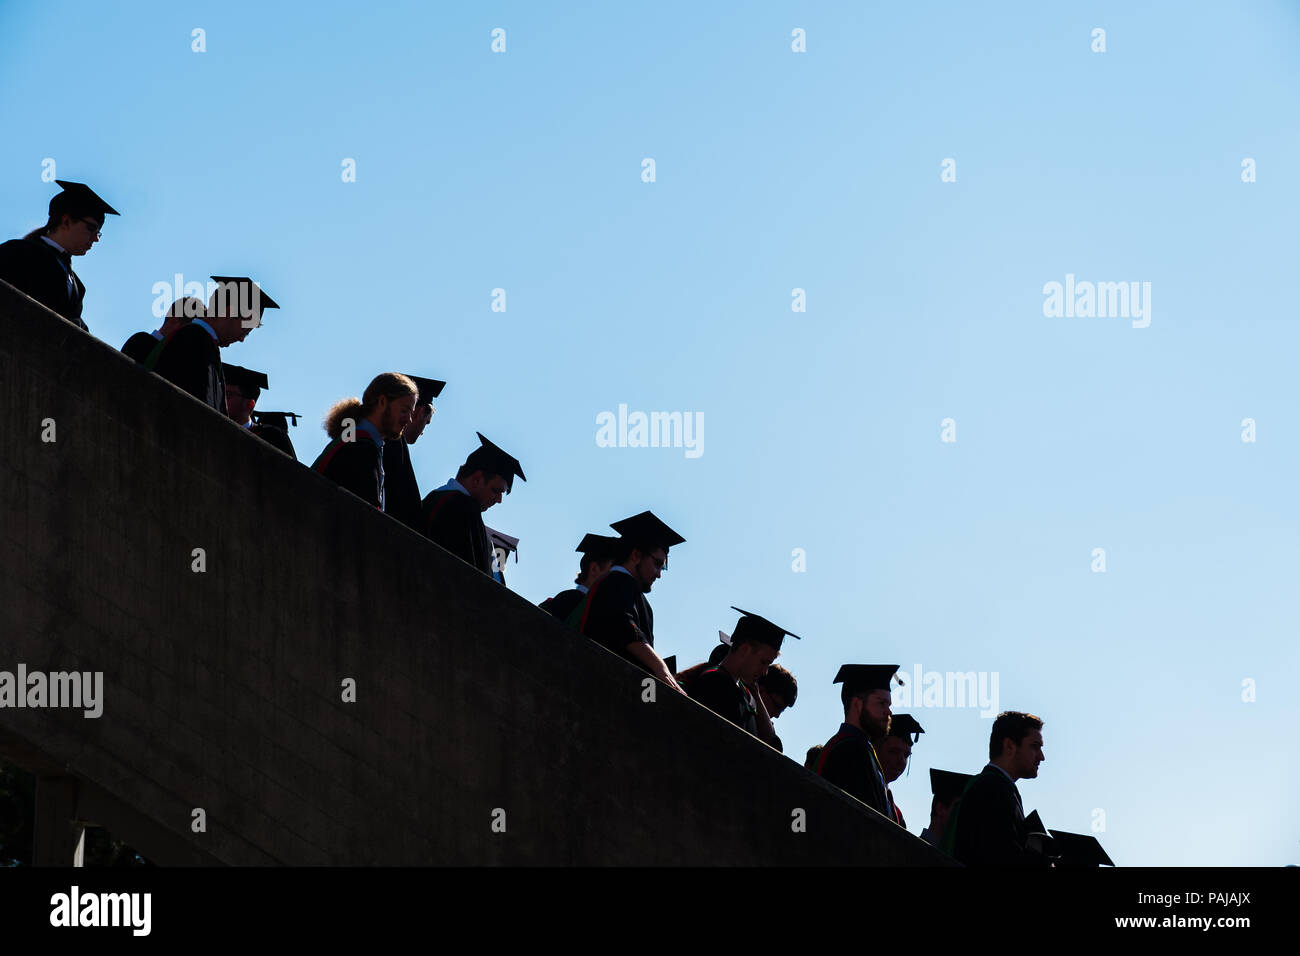 L'enseignement supérieur au Royaume-Uni : les finissants d'université d'Aberystwyth, à leurs conseils et le mortier traditionnel robes académiques noir. Silhouetted against a blue sky. Juillet 2018 Banque D'Images